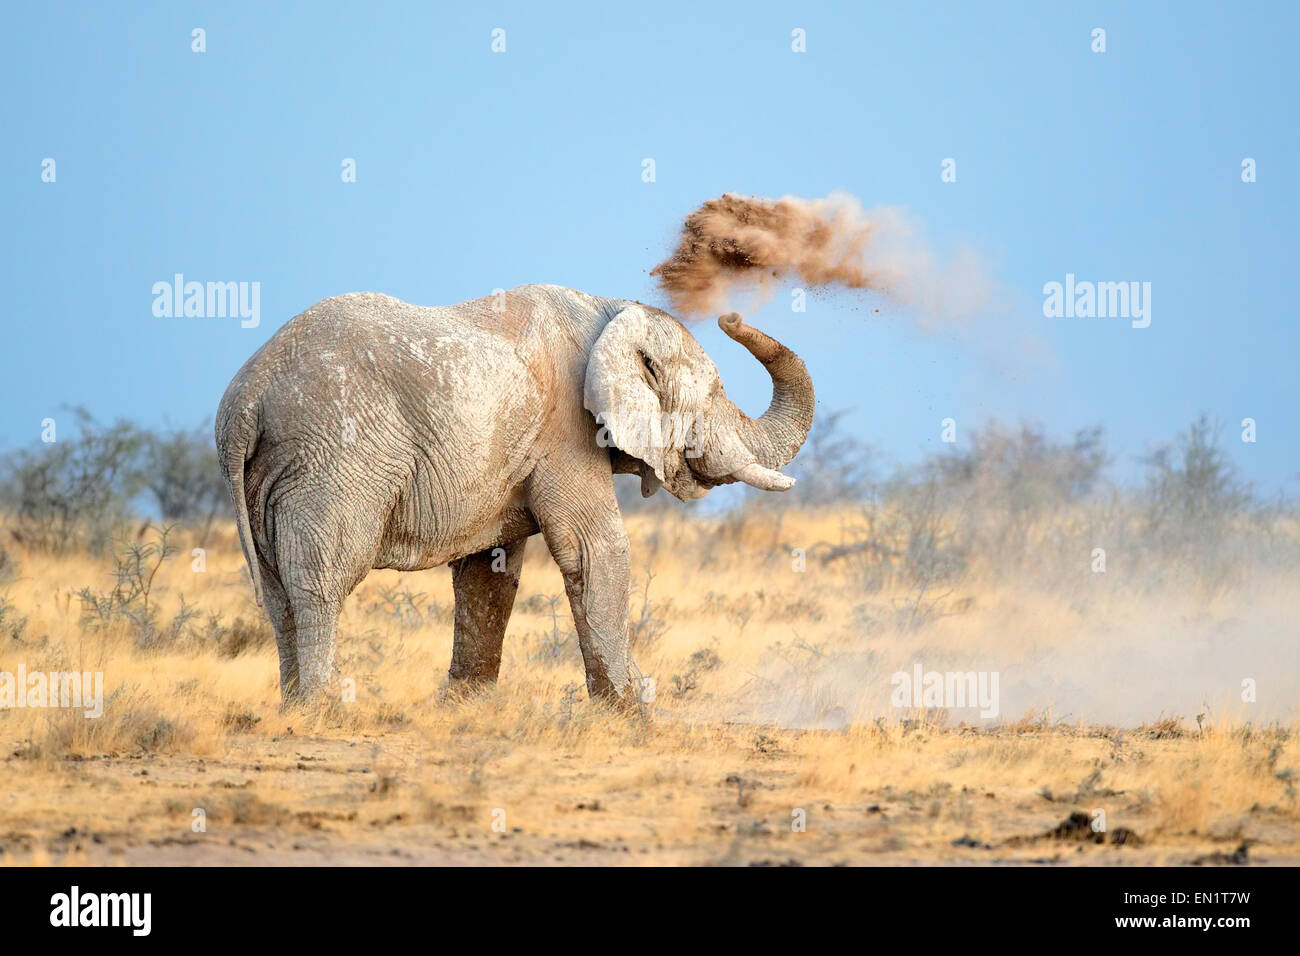 Mud covered African elephant (Loxodonta africana) throwing dust, Etosha National Park, Namibia Stock Photo